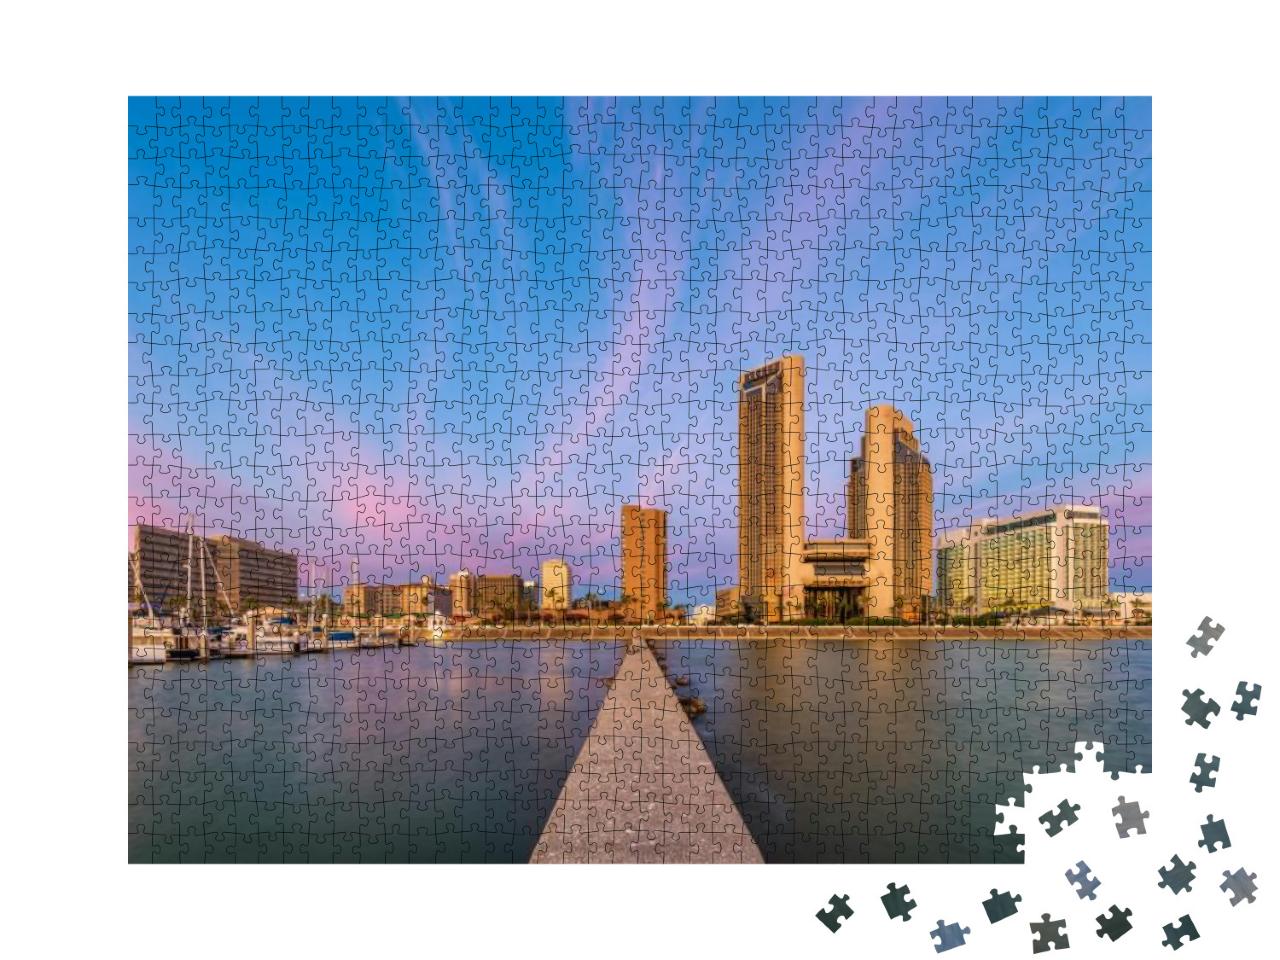 Corpus Christi, Texas, USA Skyline on the Bay... Jigsaw Puzzle with 1000 pieces